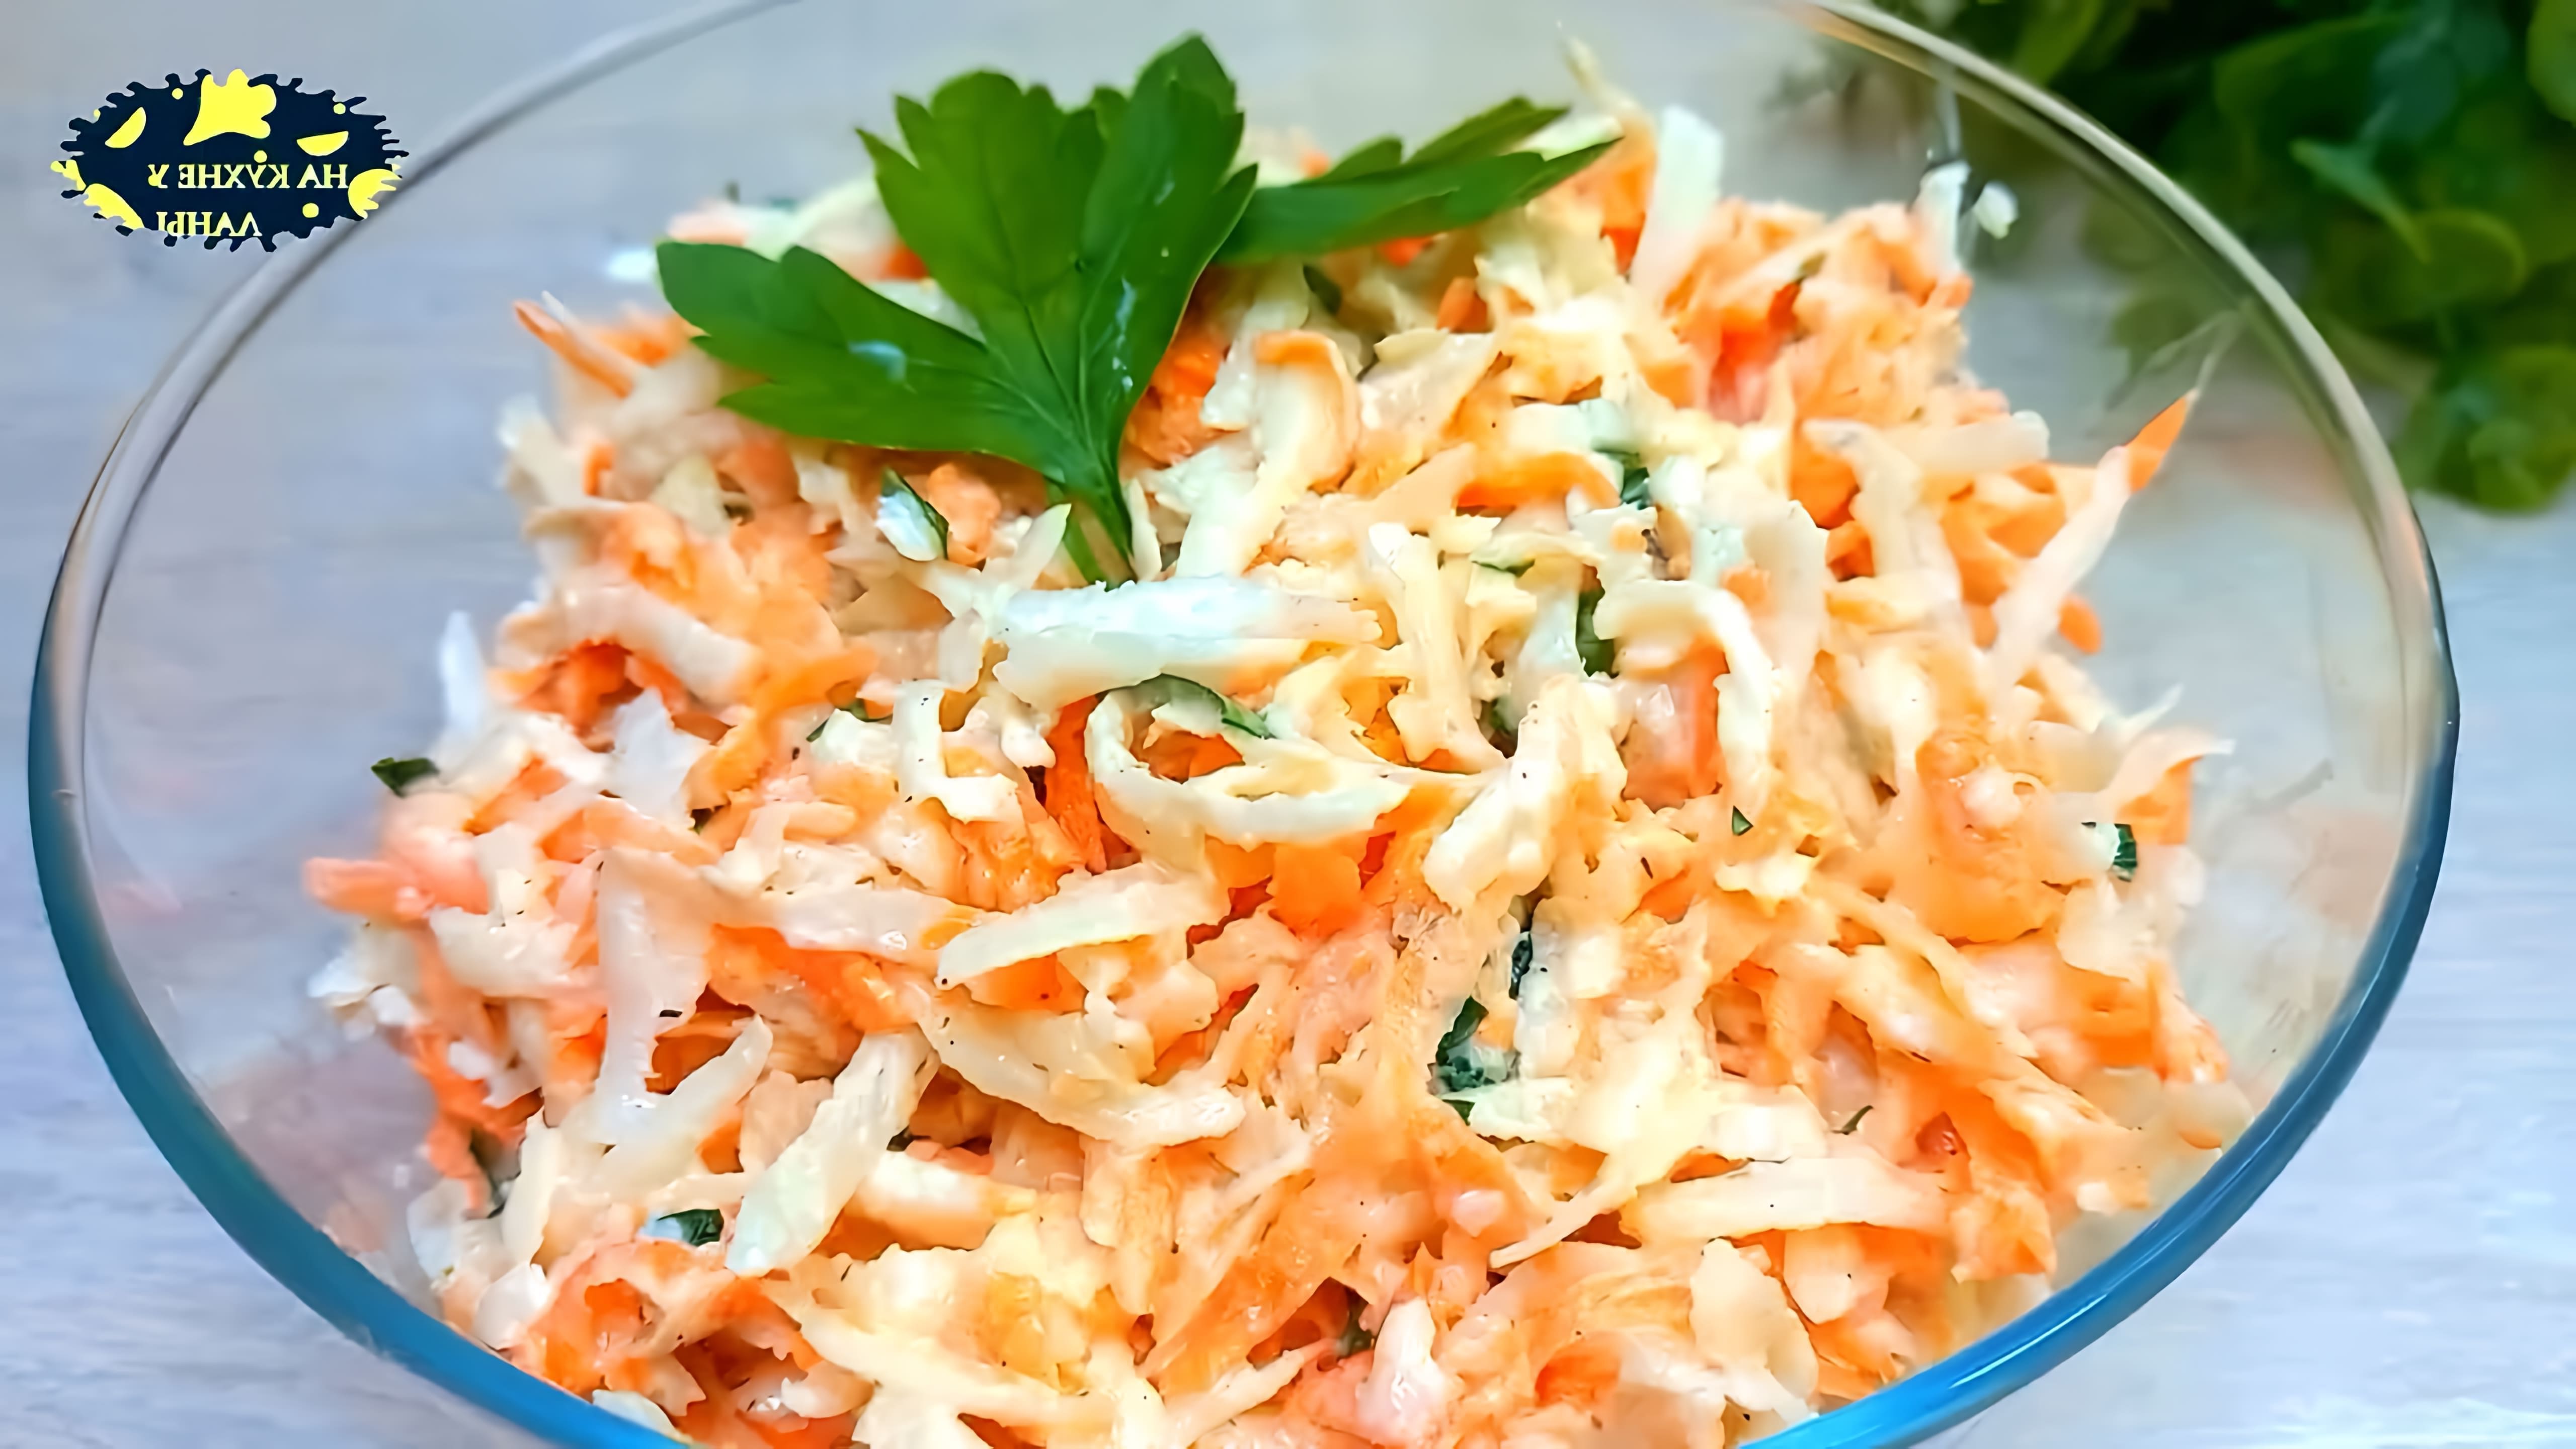 В этом видео демонстрируется процесс приготовления простого, но очень вкусного салата из черной редьки и моркови